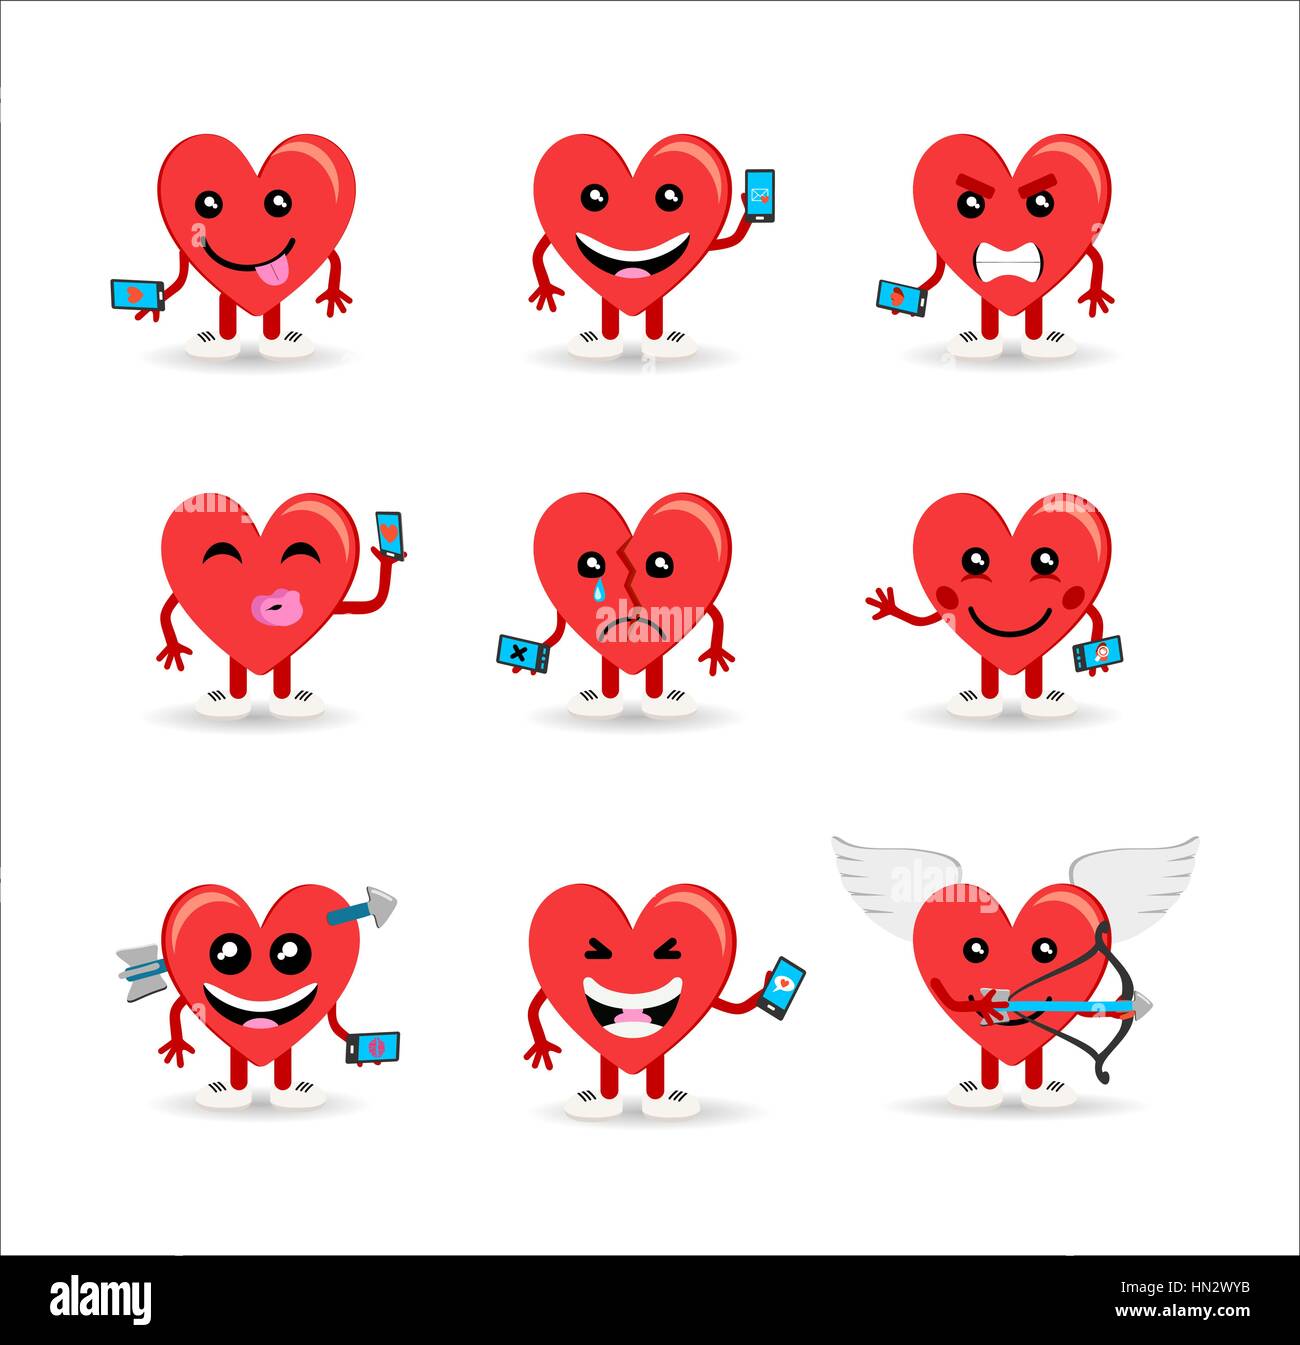 Happy valentines day ensemble de médias sociaux coeurs emoji. Les concepts de l'humeur pour les rencontres en ligne, l'amour et plus encore. Vecteur EPS10. Illustration de Vecteur